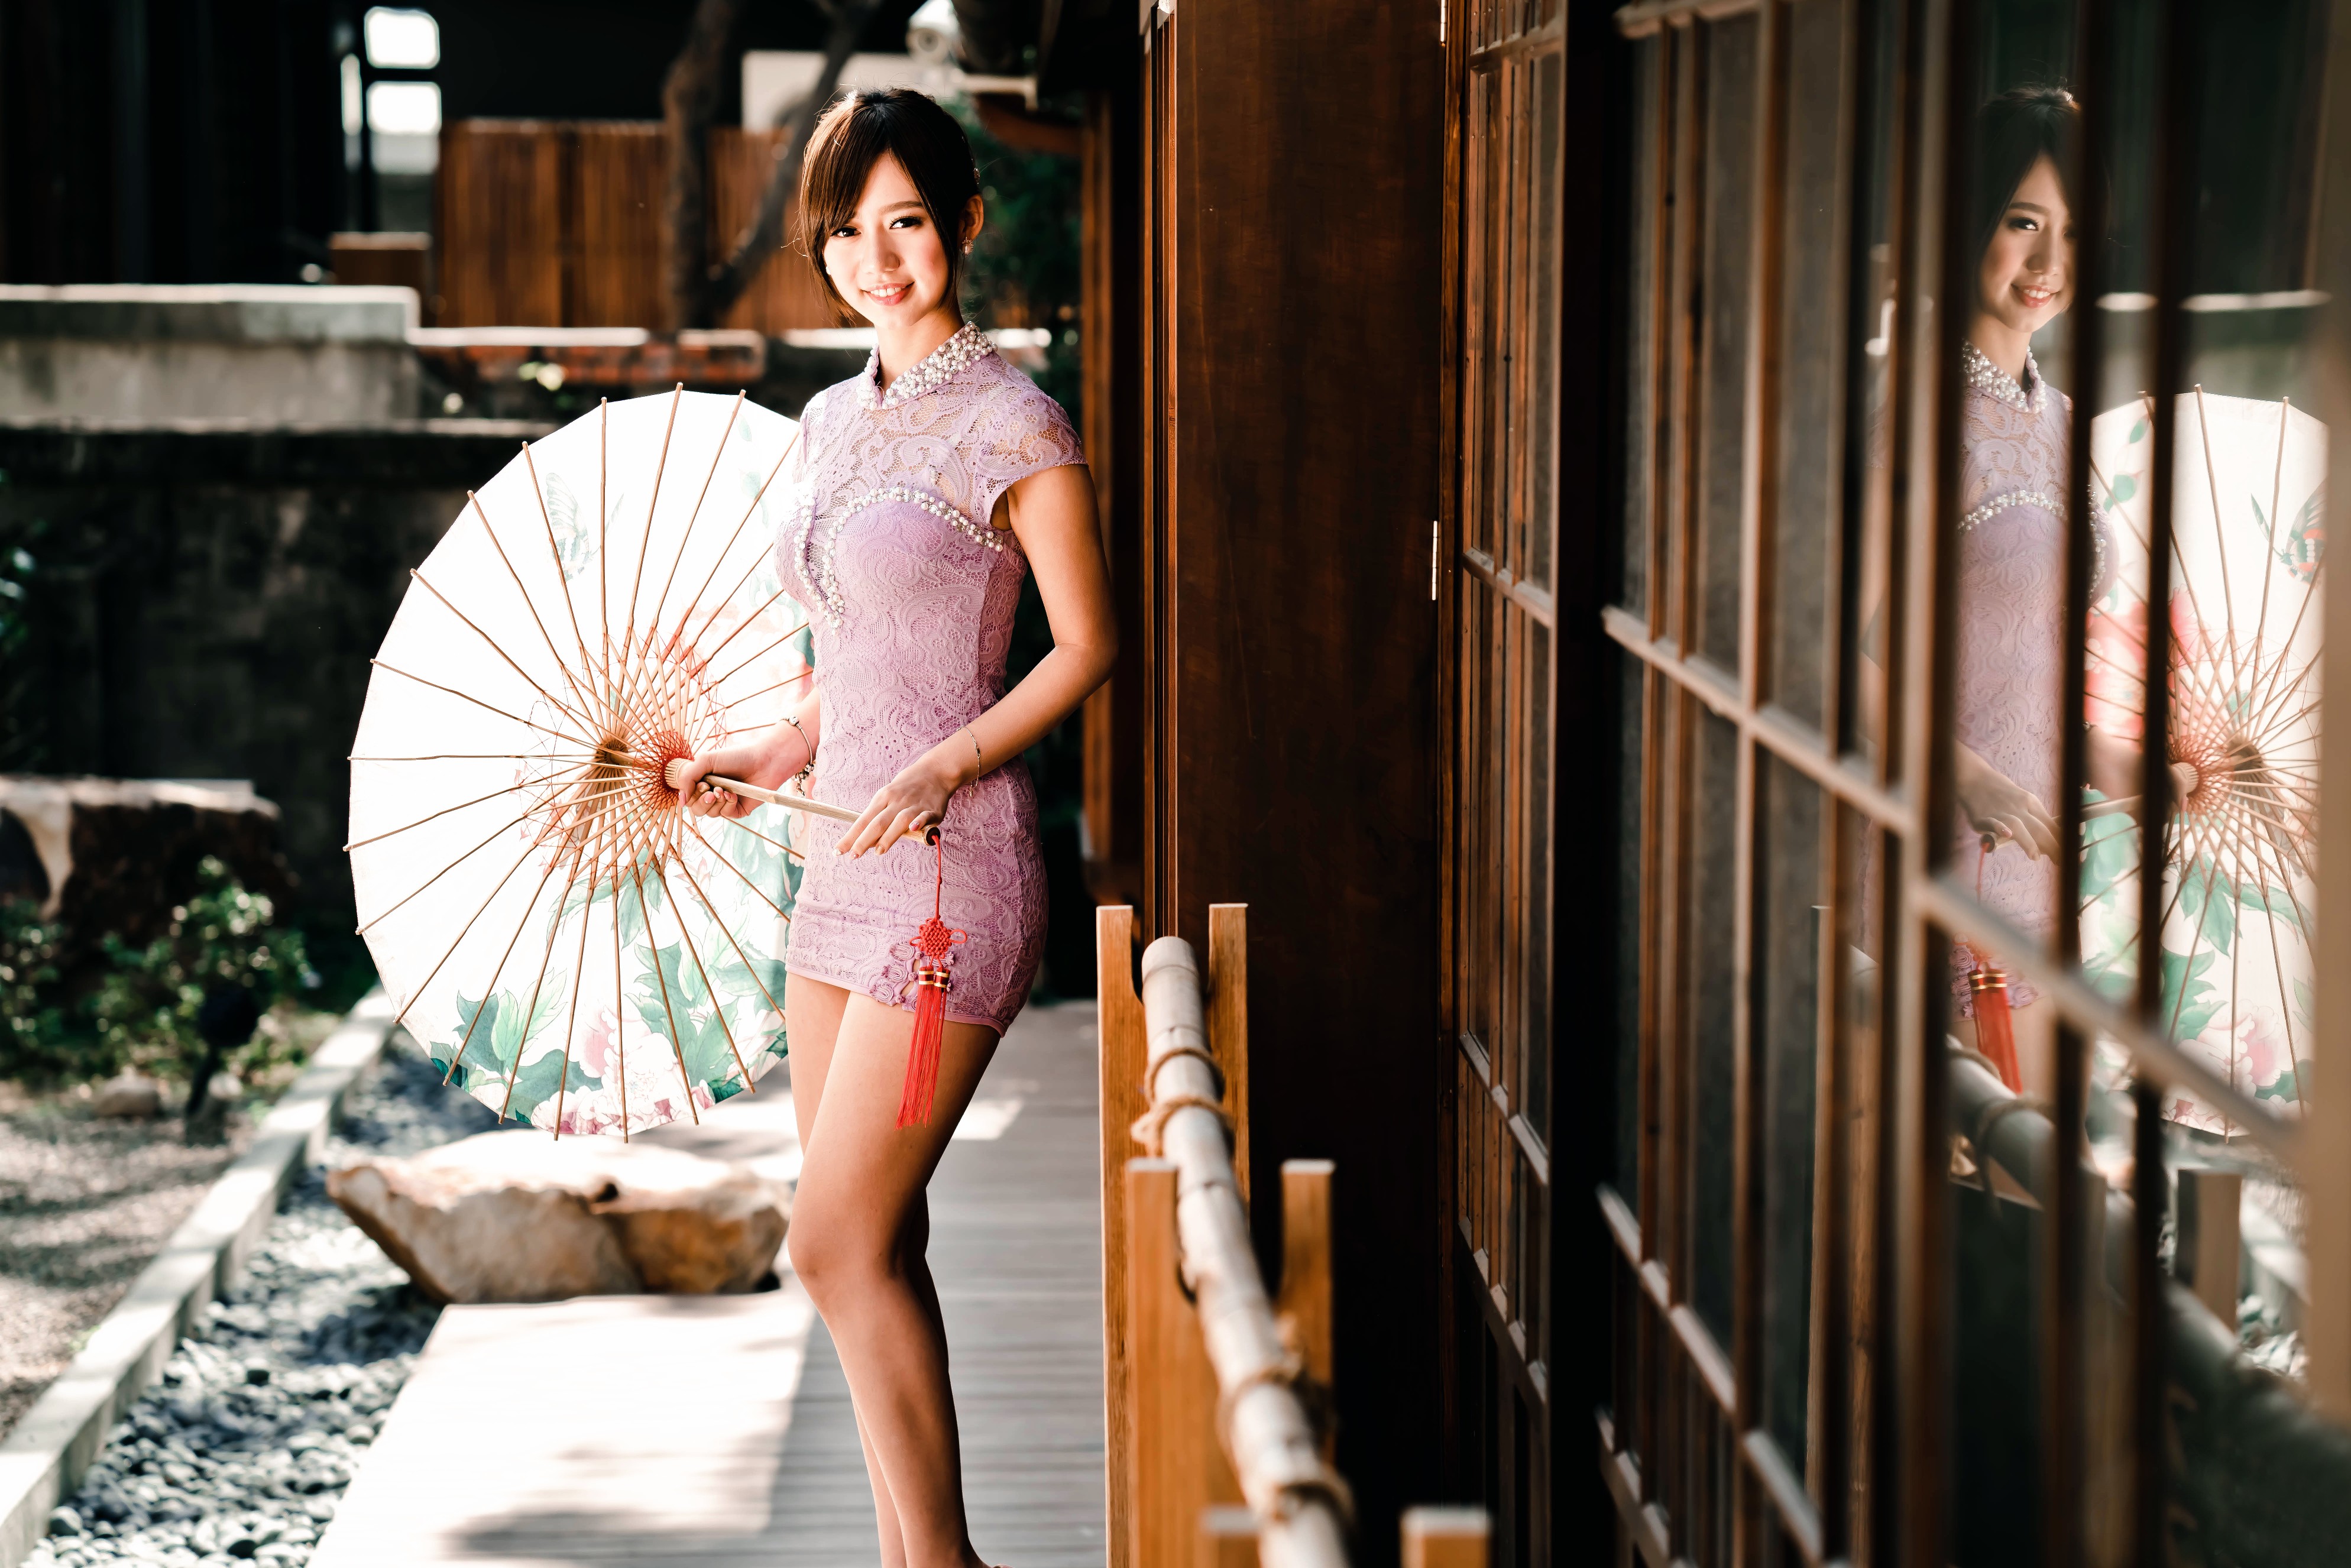 Umbrella Asian Women Model Standing Brunette Short Hair Looking At Viewer Purple Dresses 3976x2652